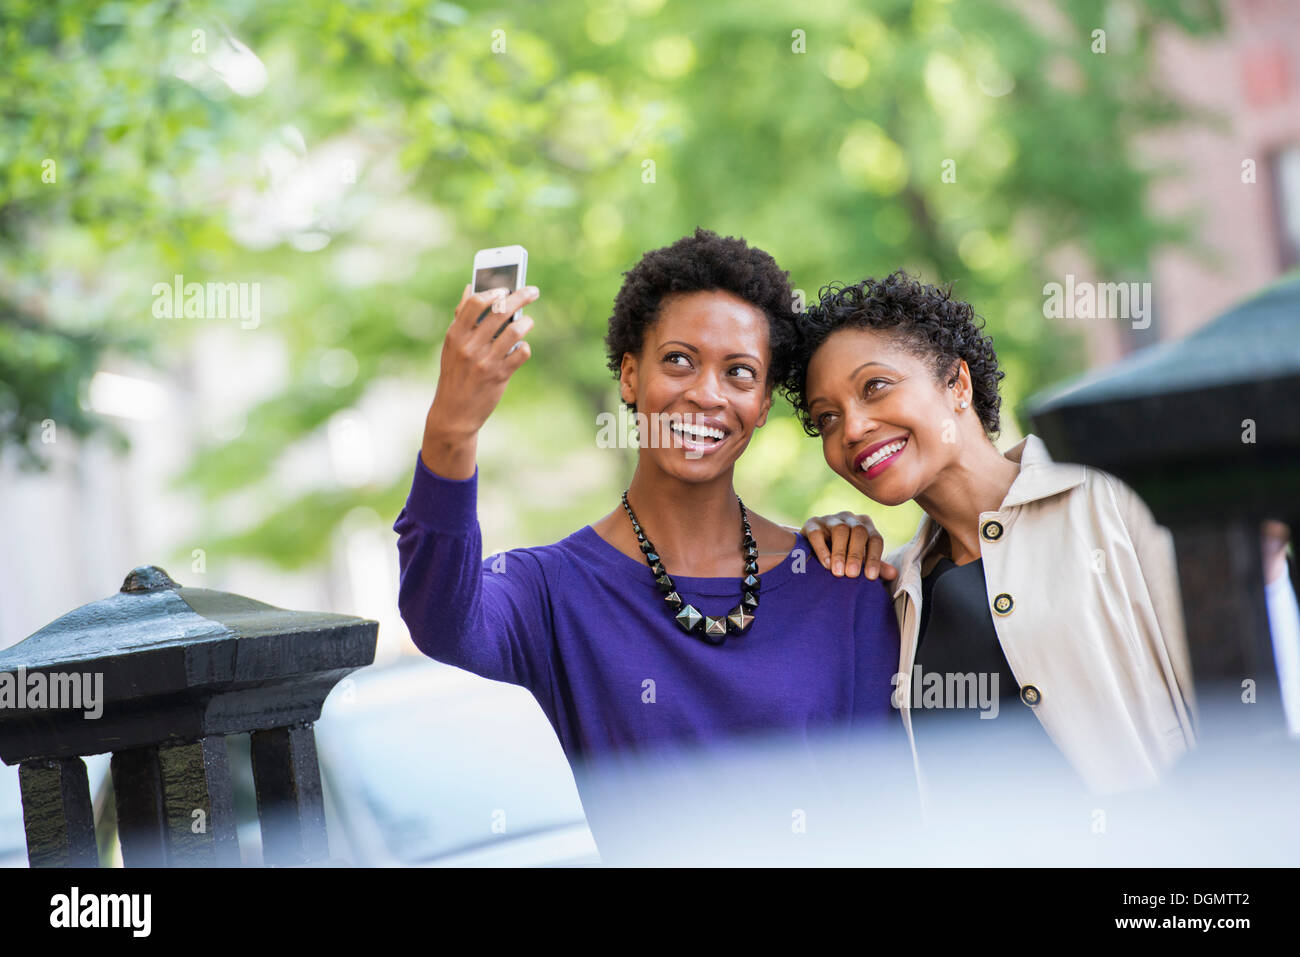 La vie en ville. Deux femmes assises sur un banc de parc, côte à côte. Posant pour une photo avec un téléphone intelligent. Banque D'Images